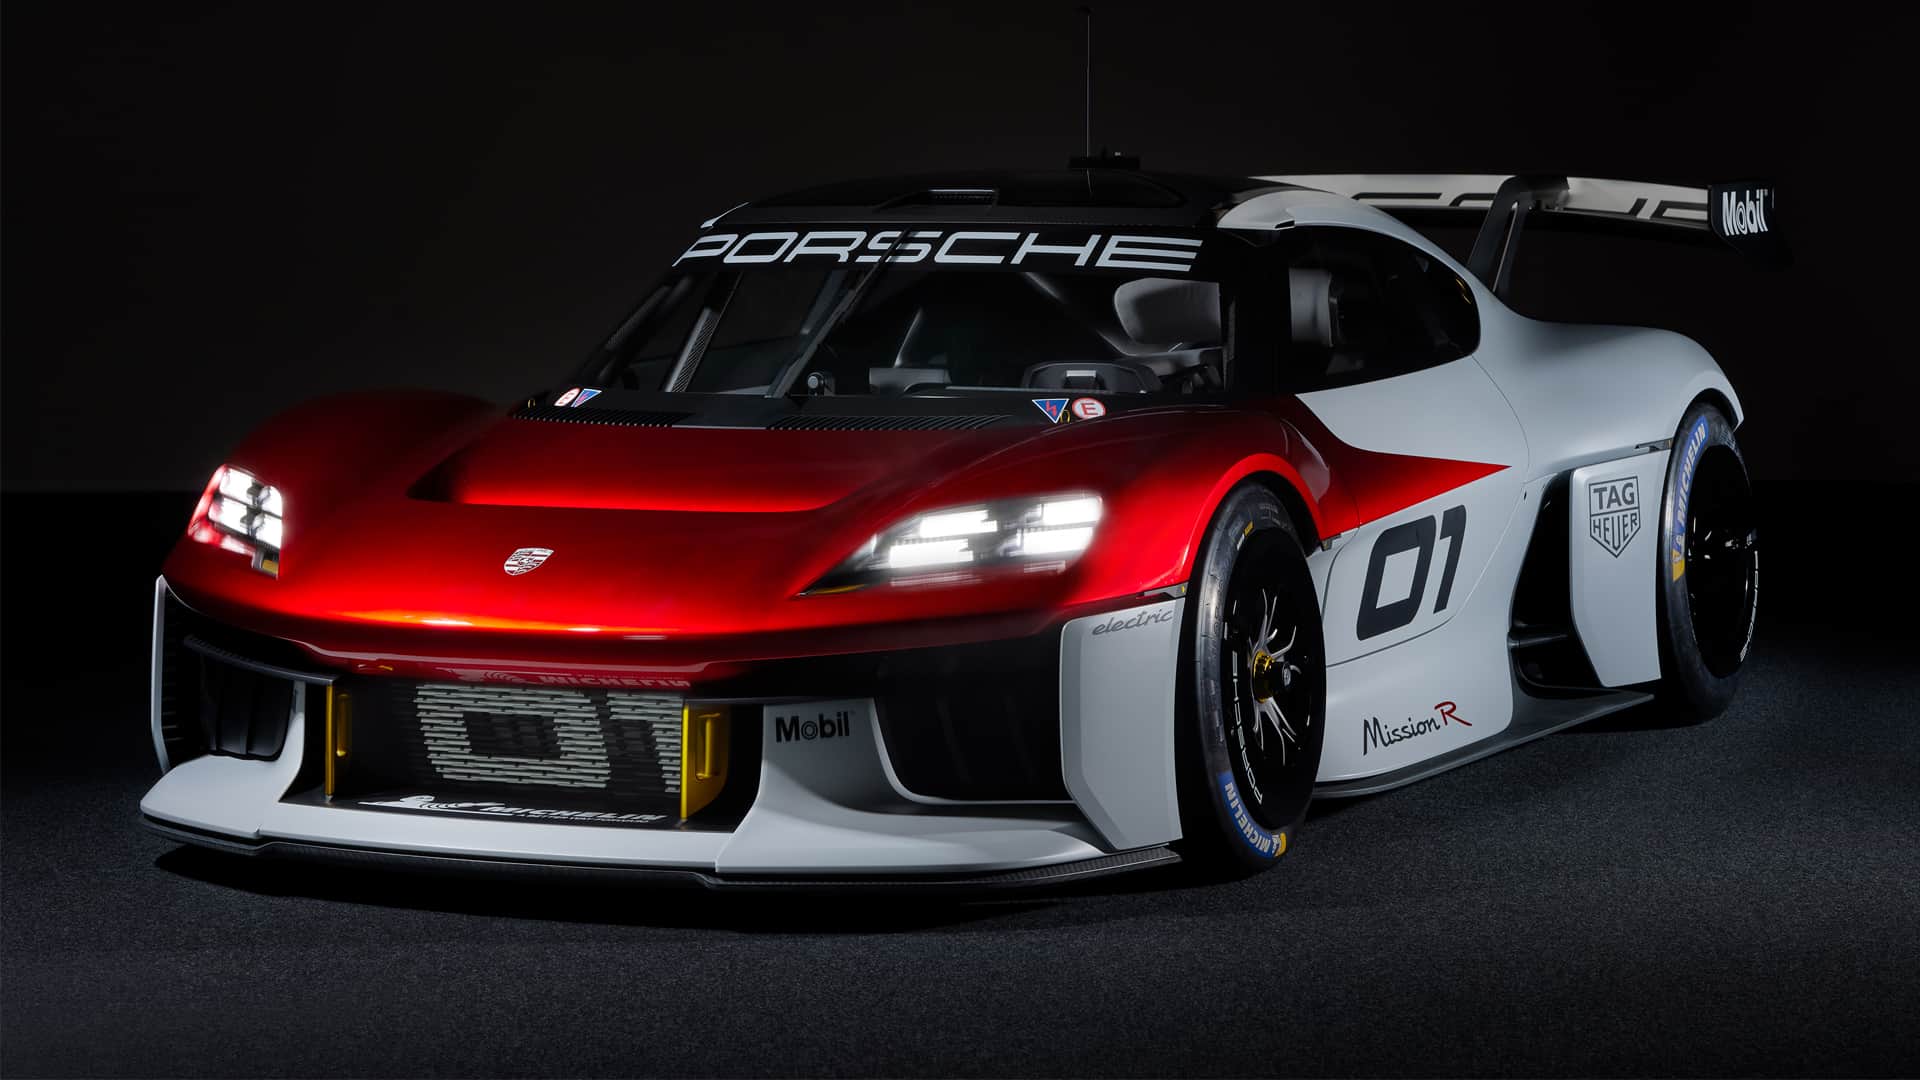 Porsche Mission R electric GT racing car concept